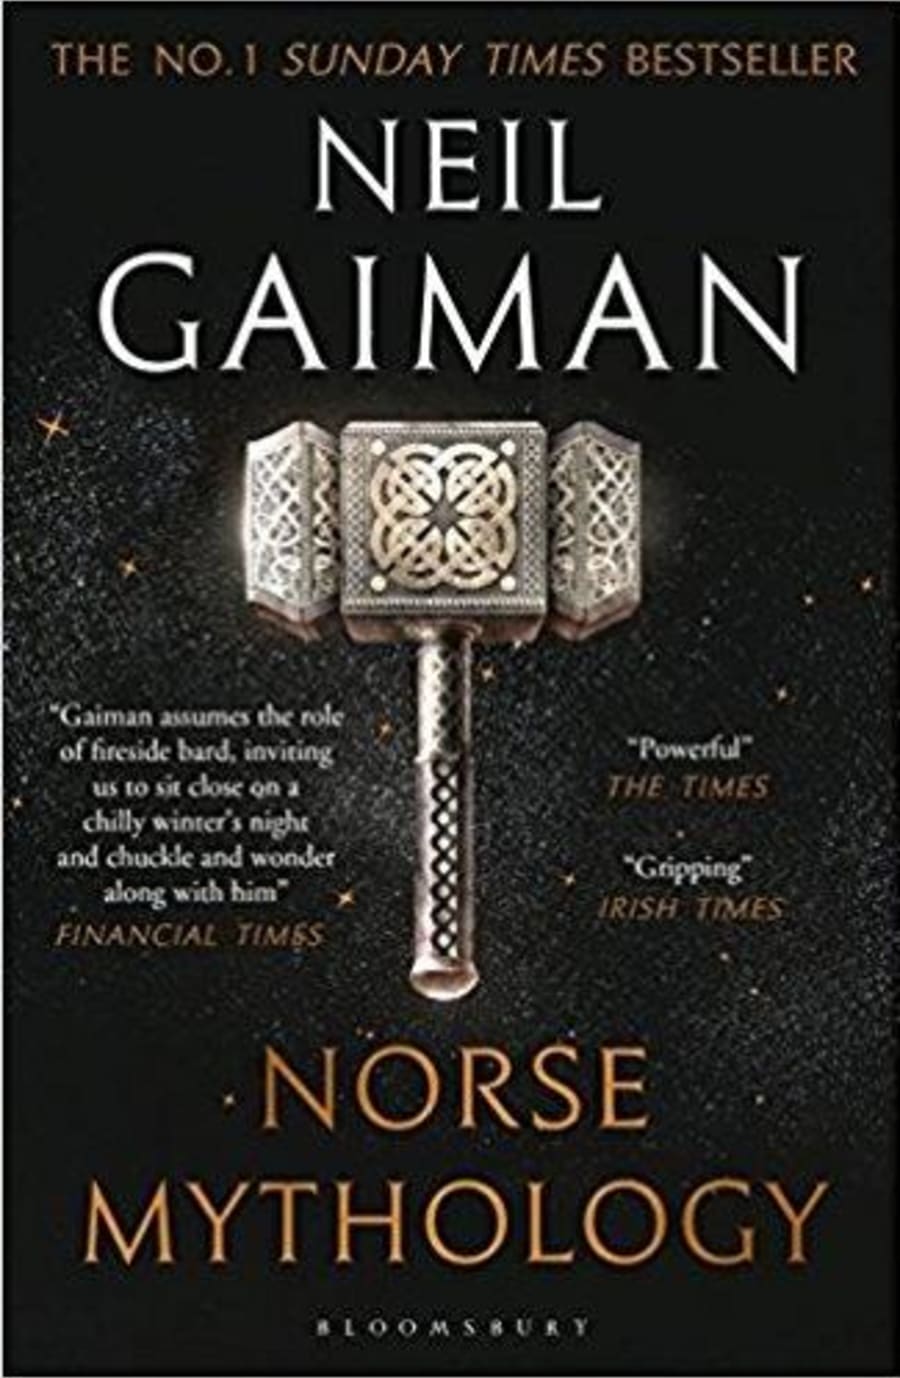 Neil Gaimans Norse Mythology